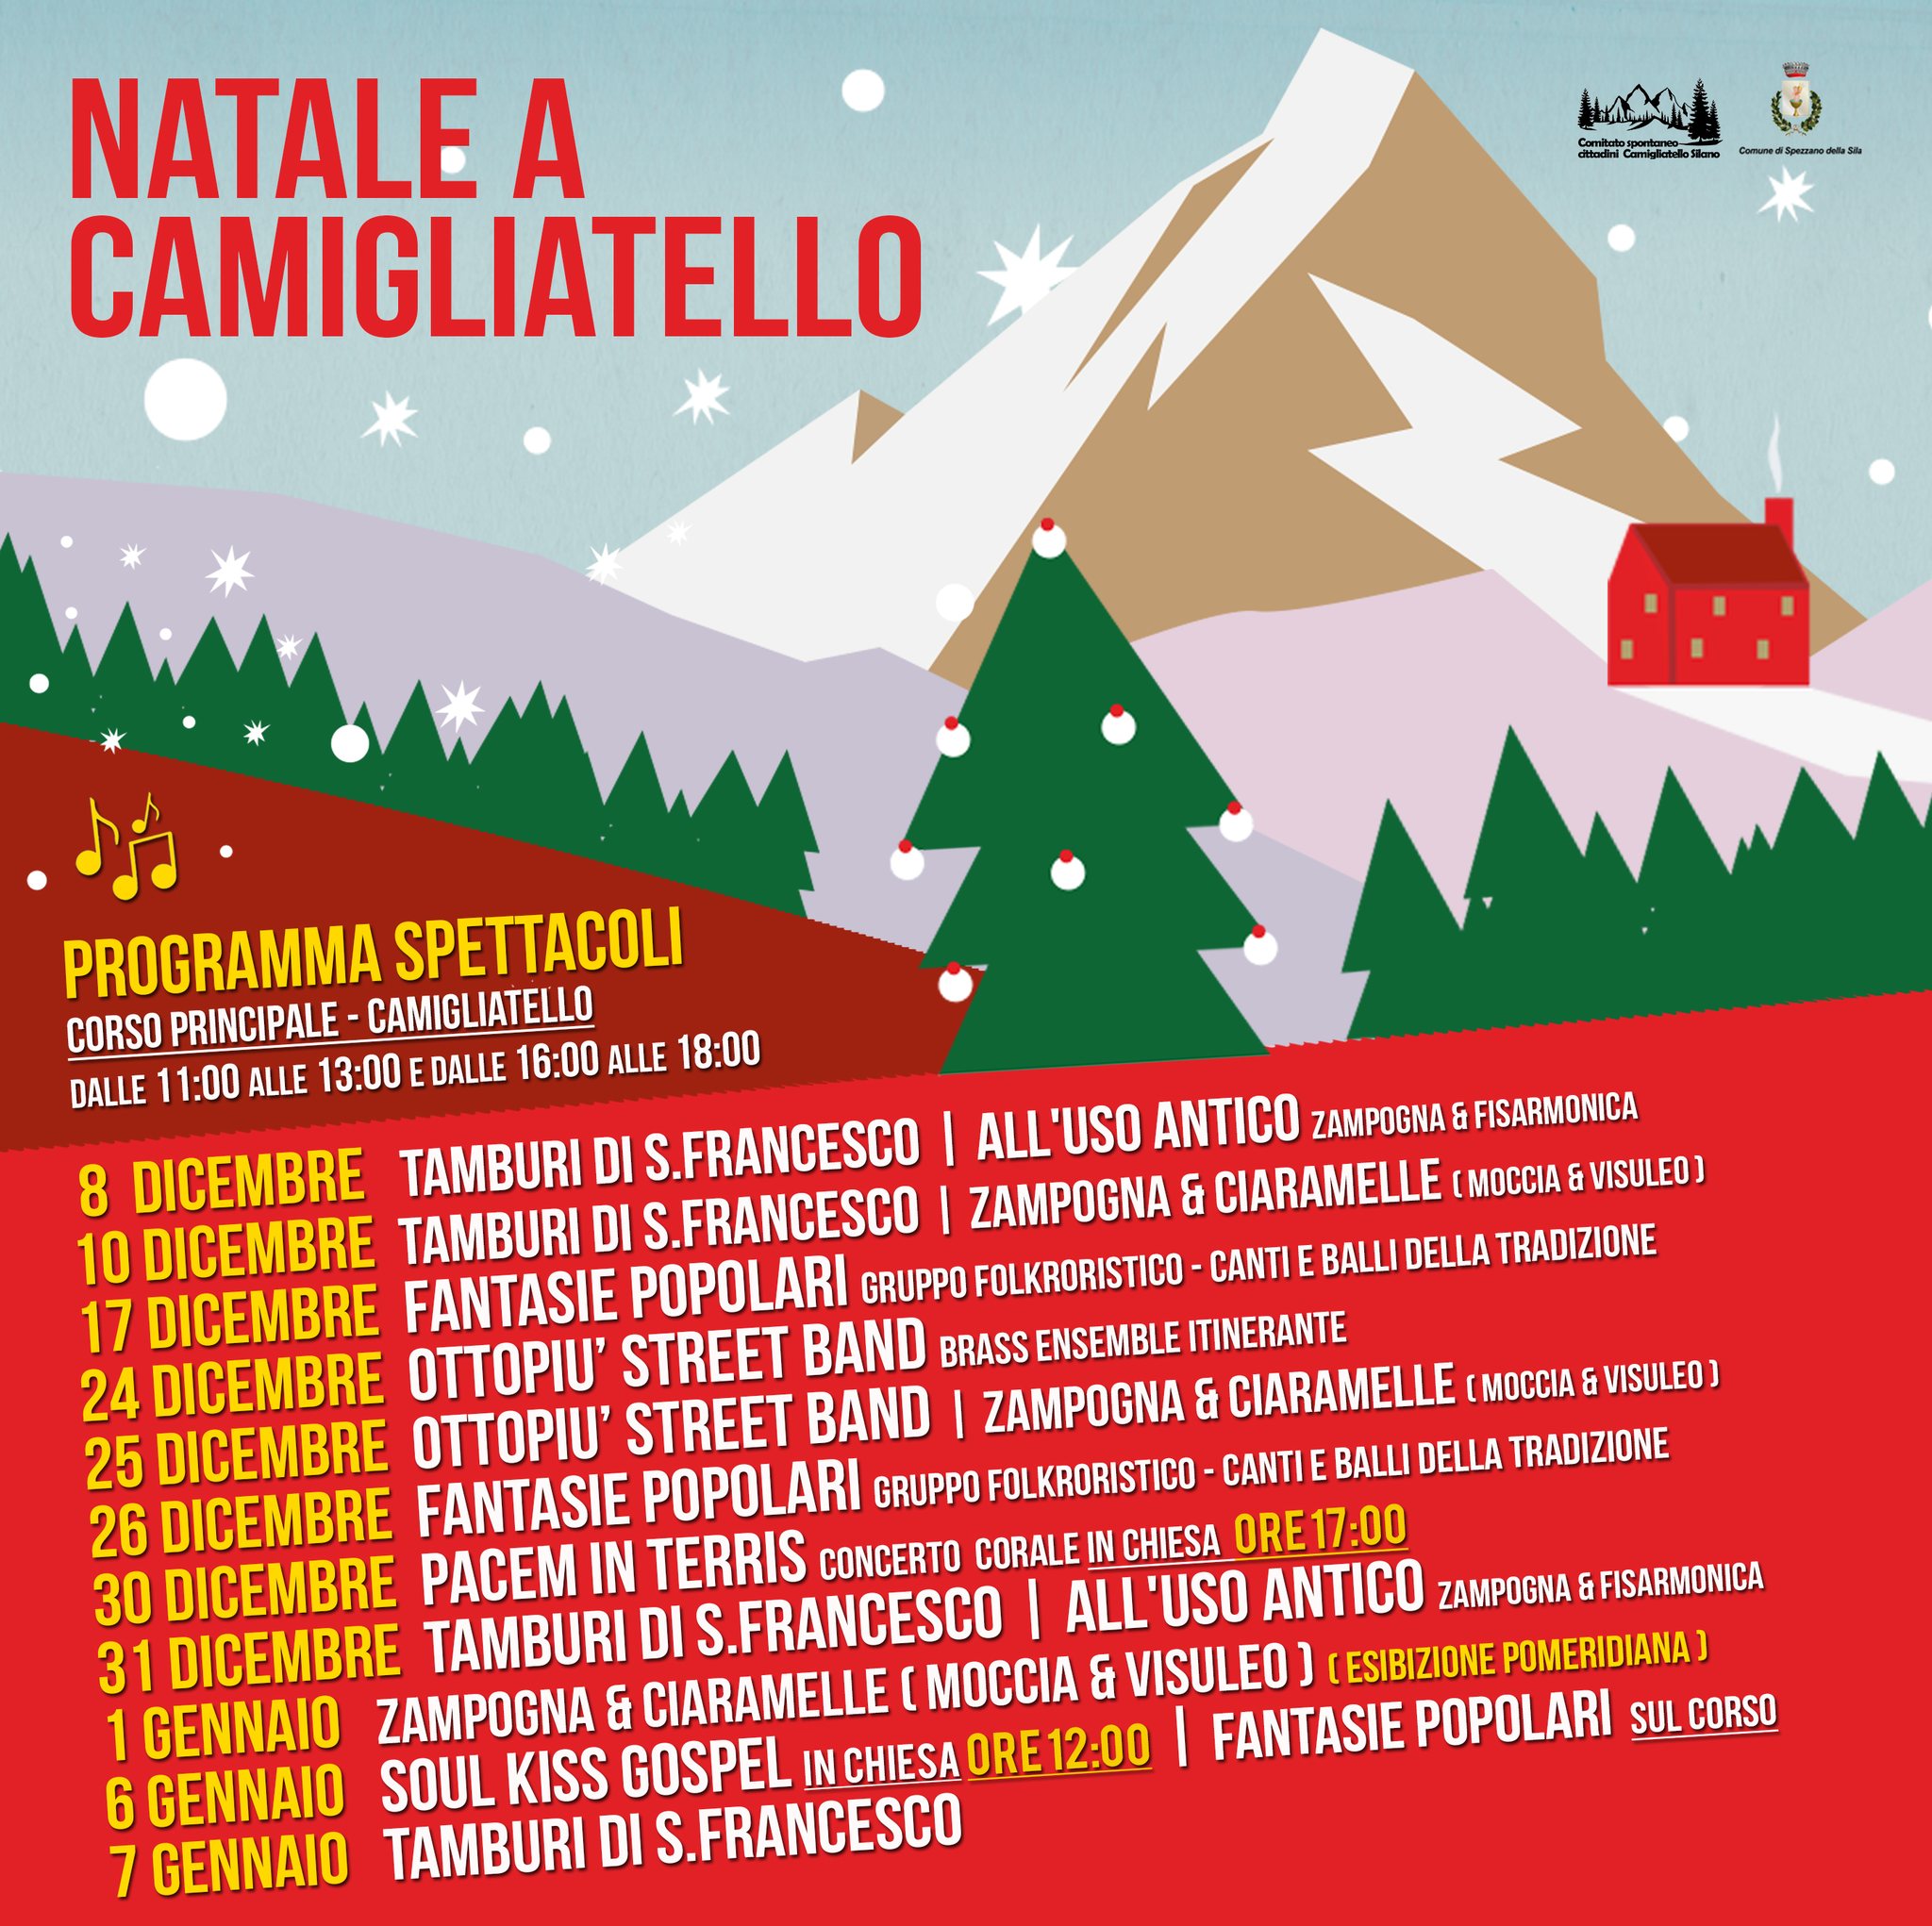 Natale a Camigliatello